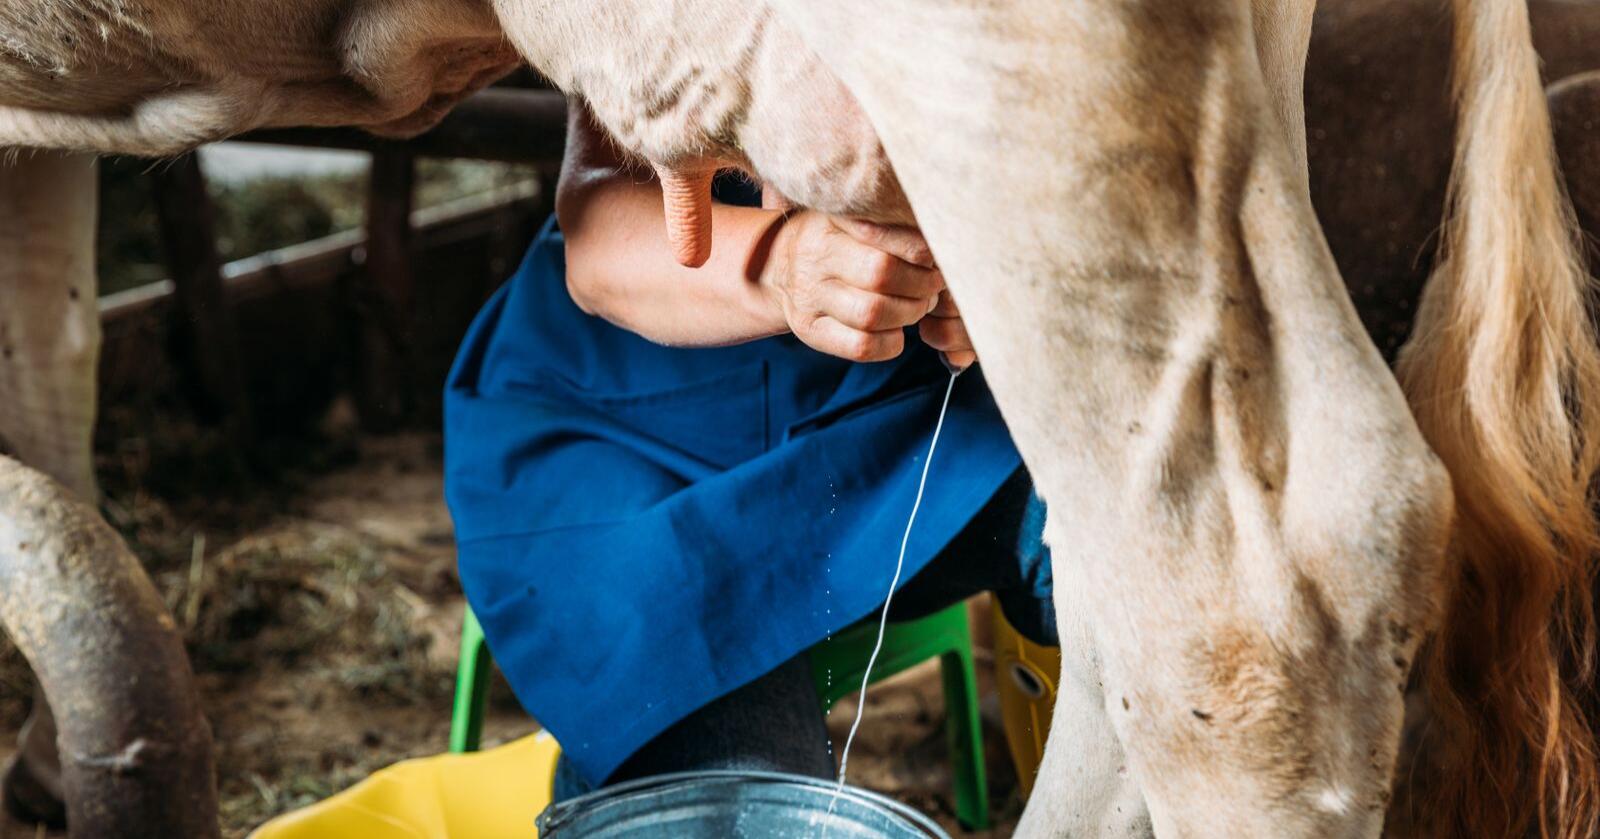  Hvor farlig eller ufarlig er rå melk? Altså melk som ikke er pasteurisert. Foto: Mostphotos